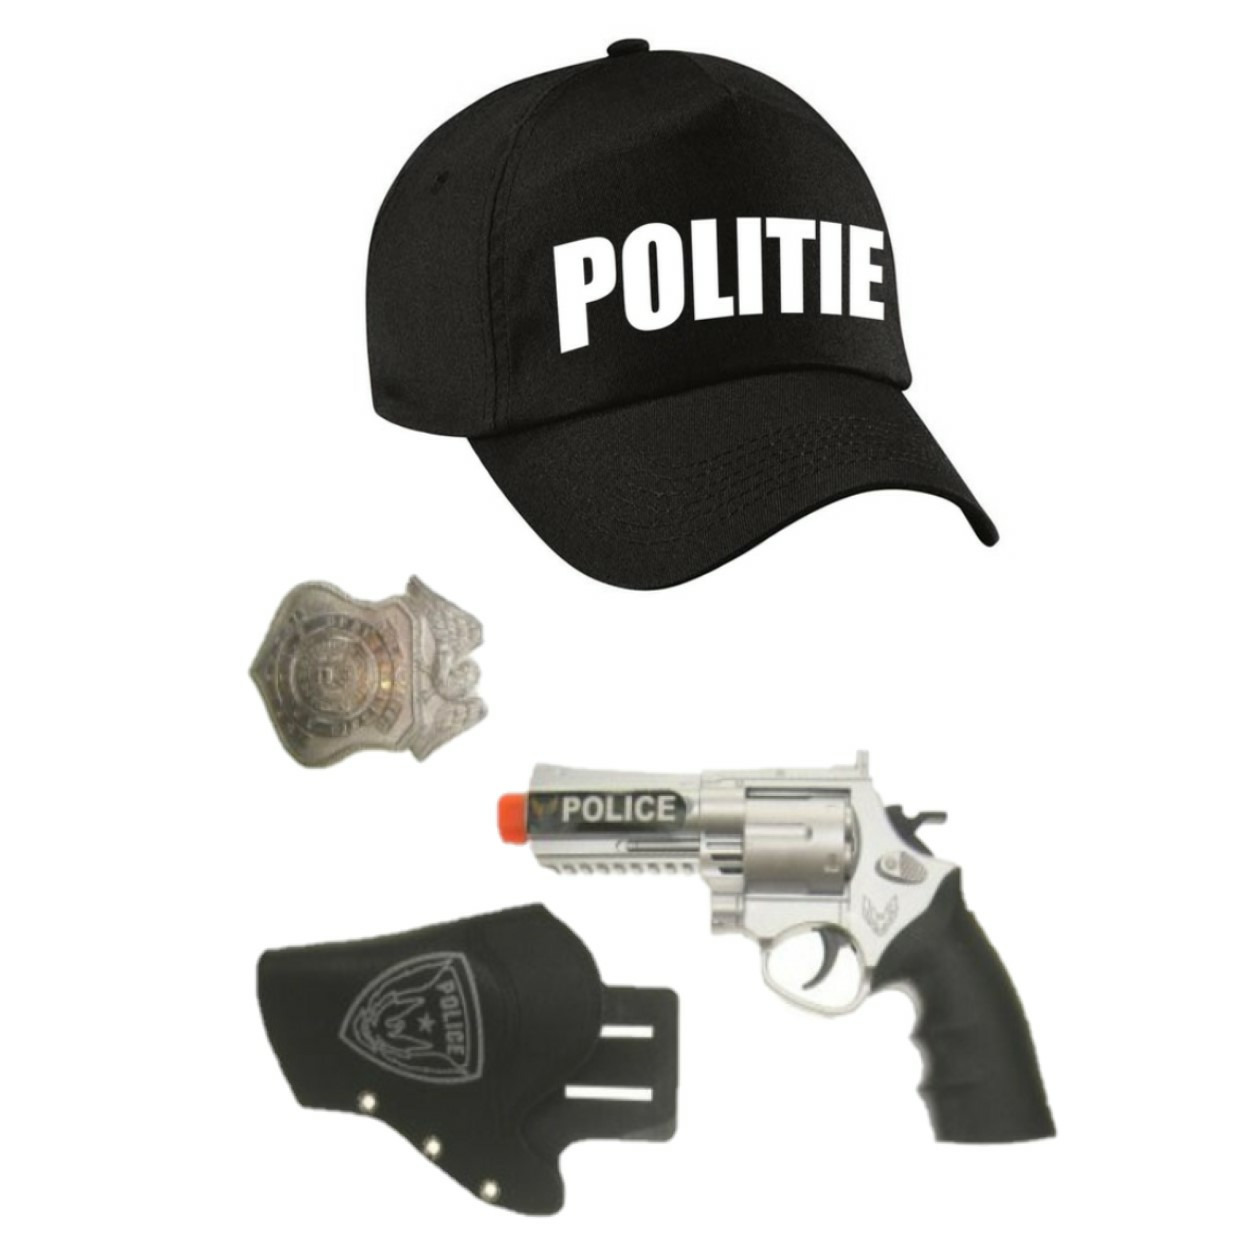 Politie verkleed cap-pet zwart met pistool-holster-badge voor kinderen